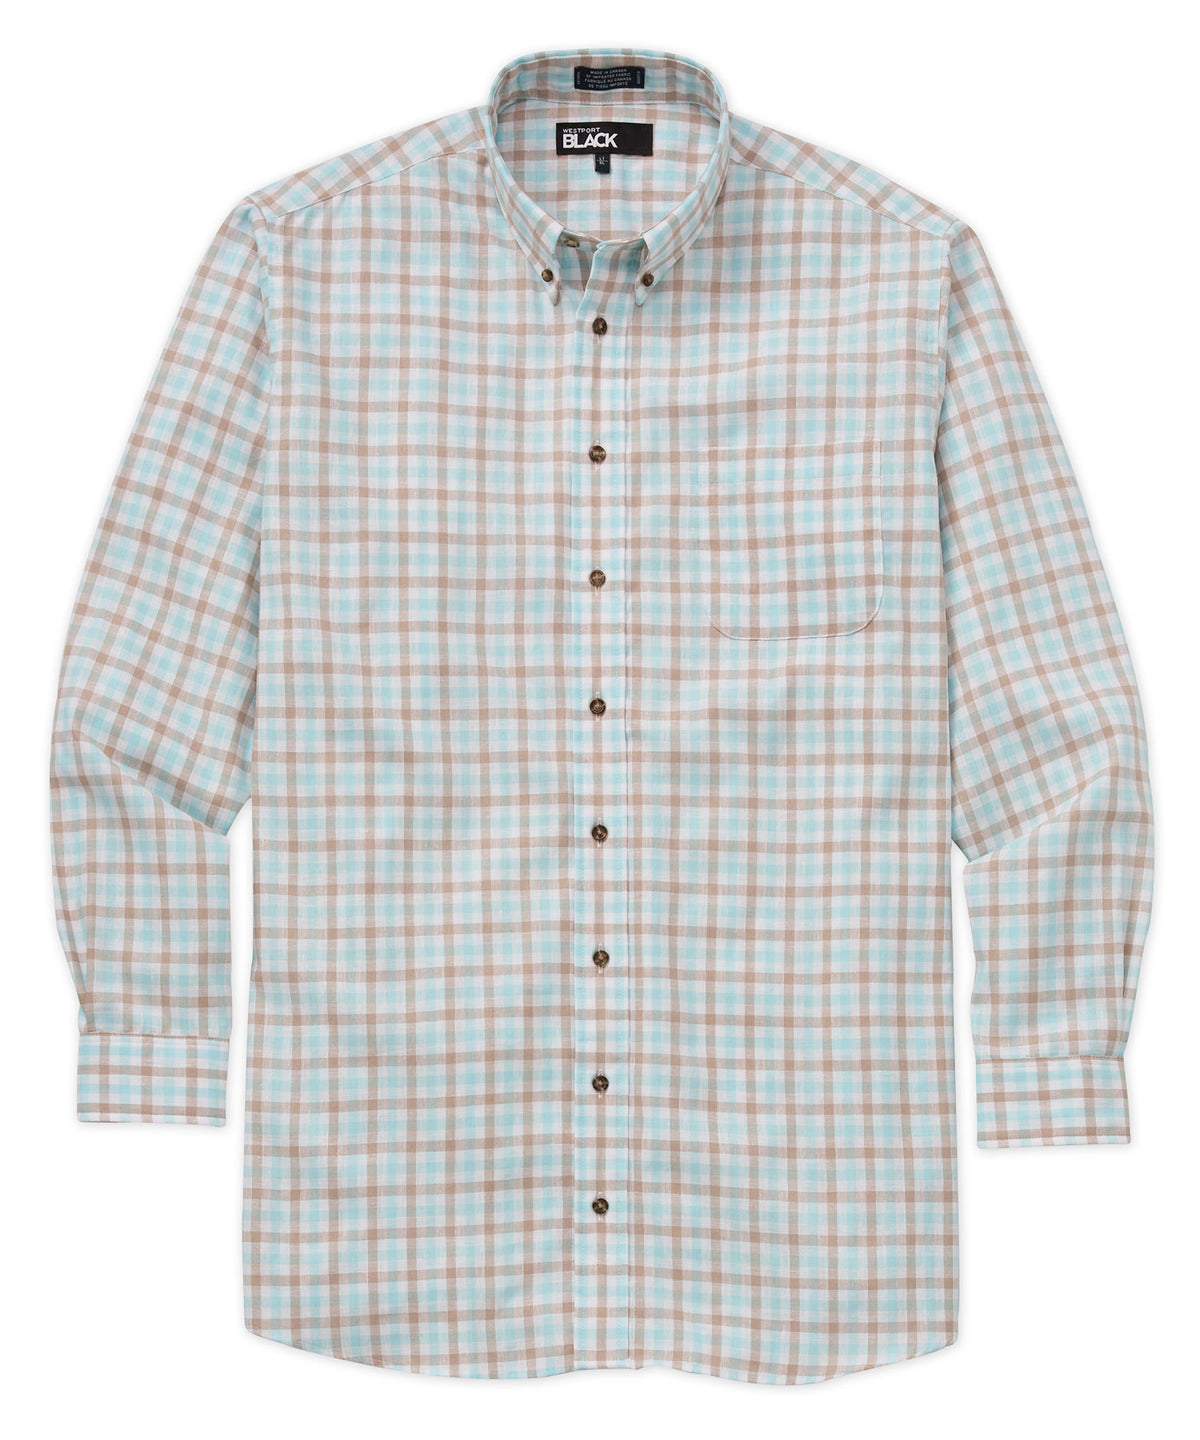 Westport Black Plaid & Check Long Sleeve Cotton-Linen Sport Shirt, Big & Tall